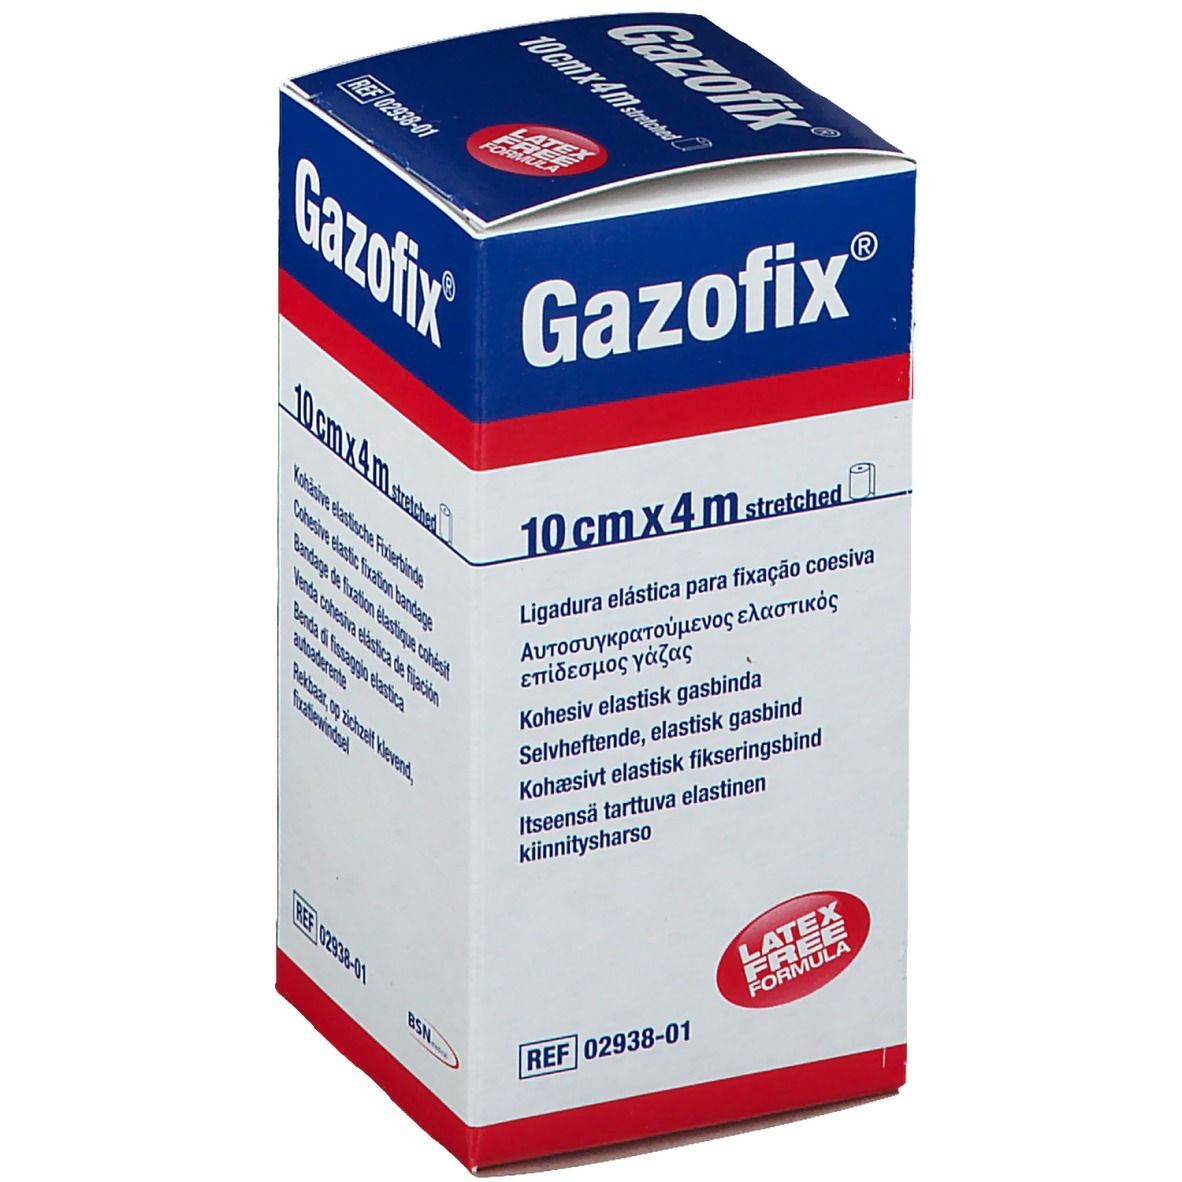 Gazofix® 10 cm x 4 m